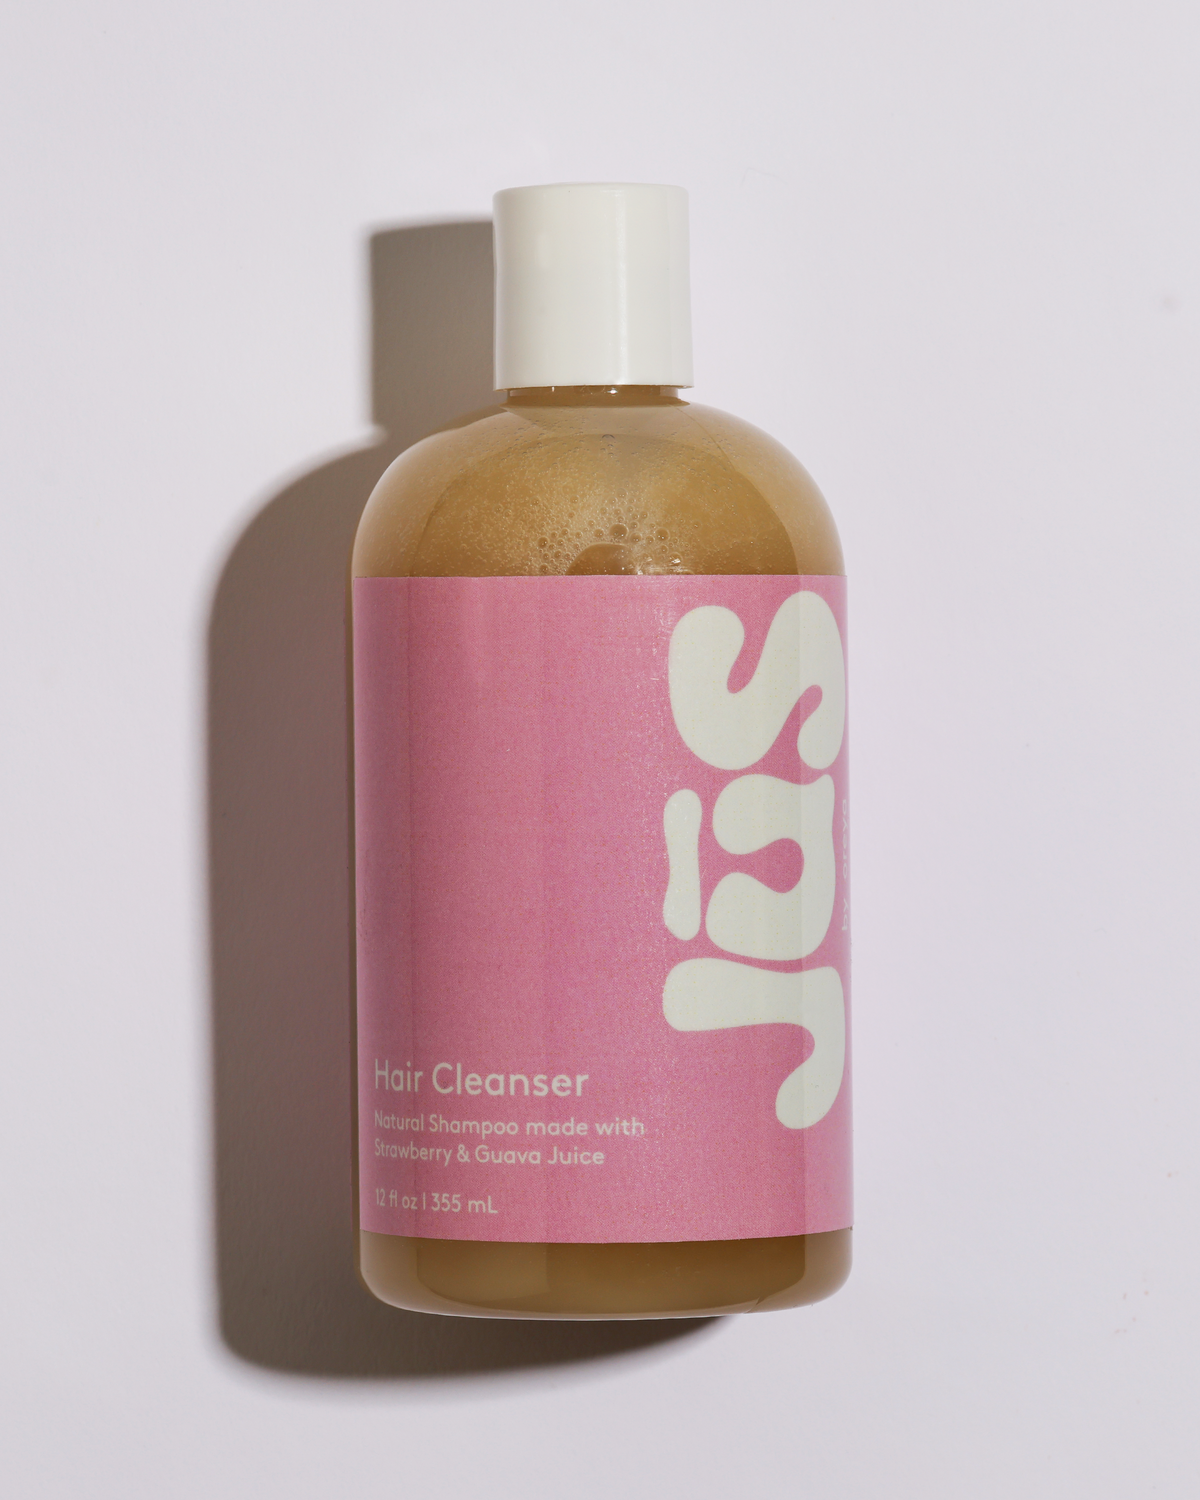 HAIR CLEANSER (Shampoo)